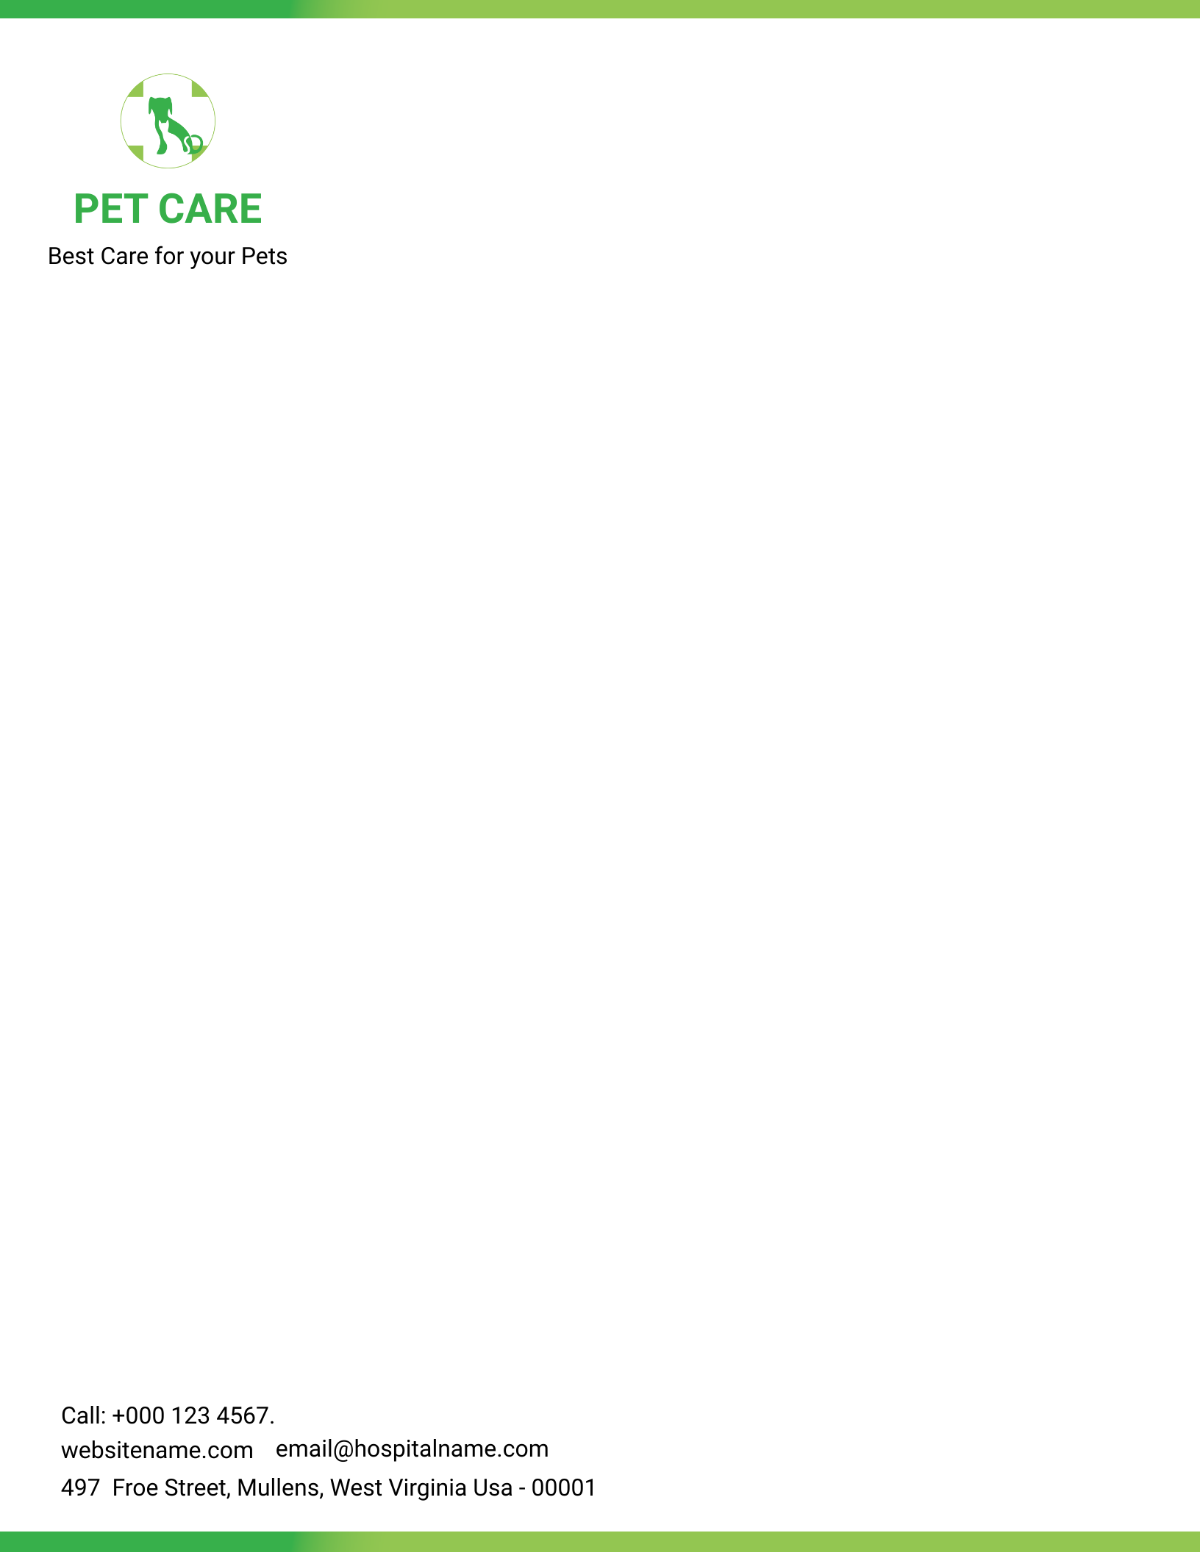 Pet Care Letterhead